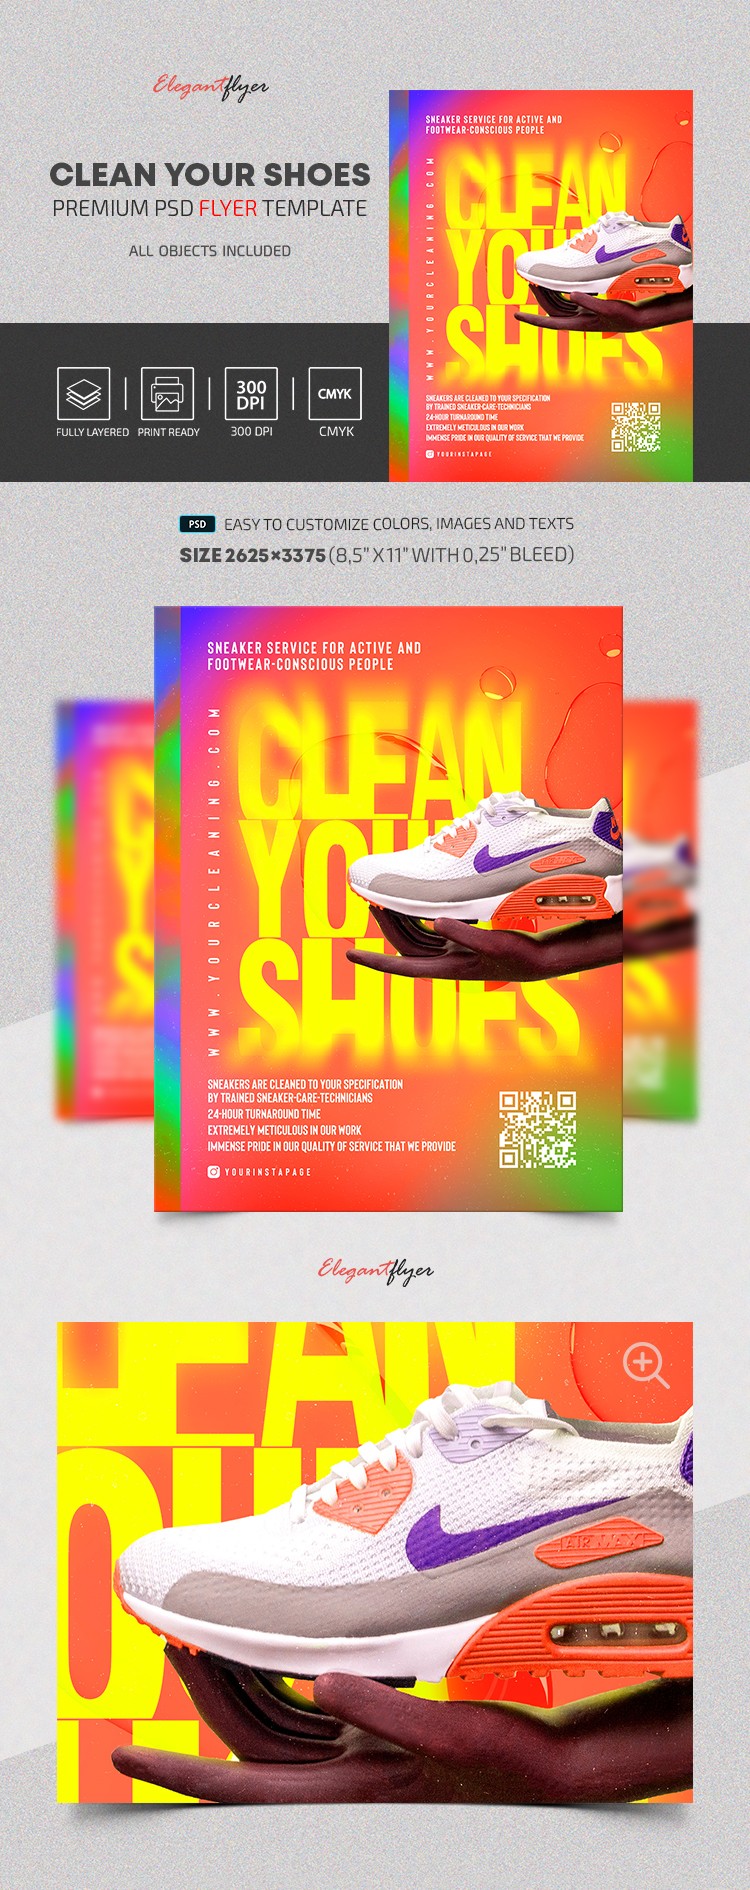 Reinigen Sie Ihre Schuhe Flyer by ElegantFlyer